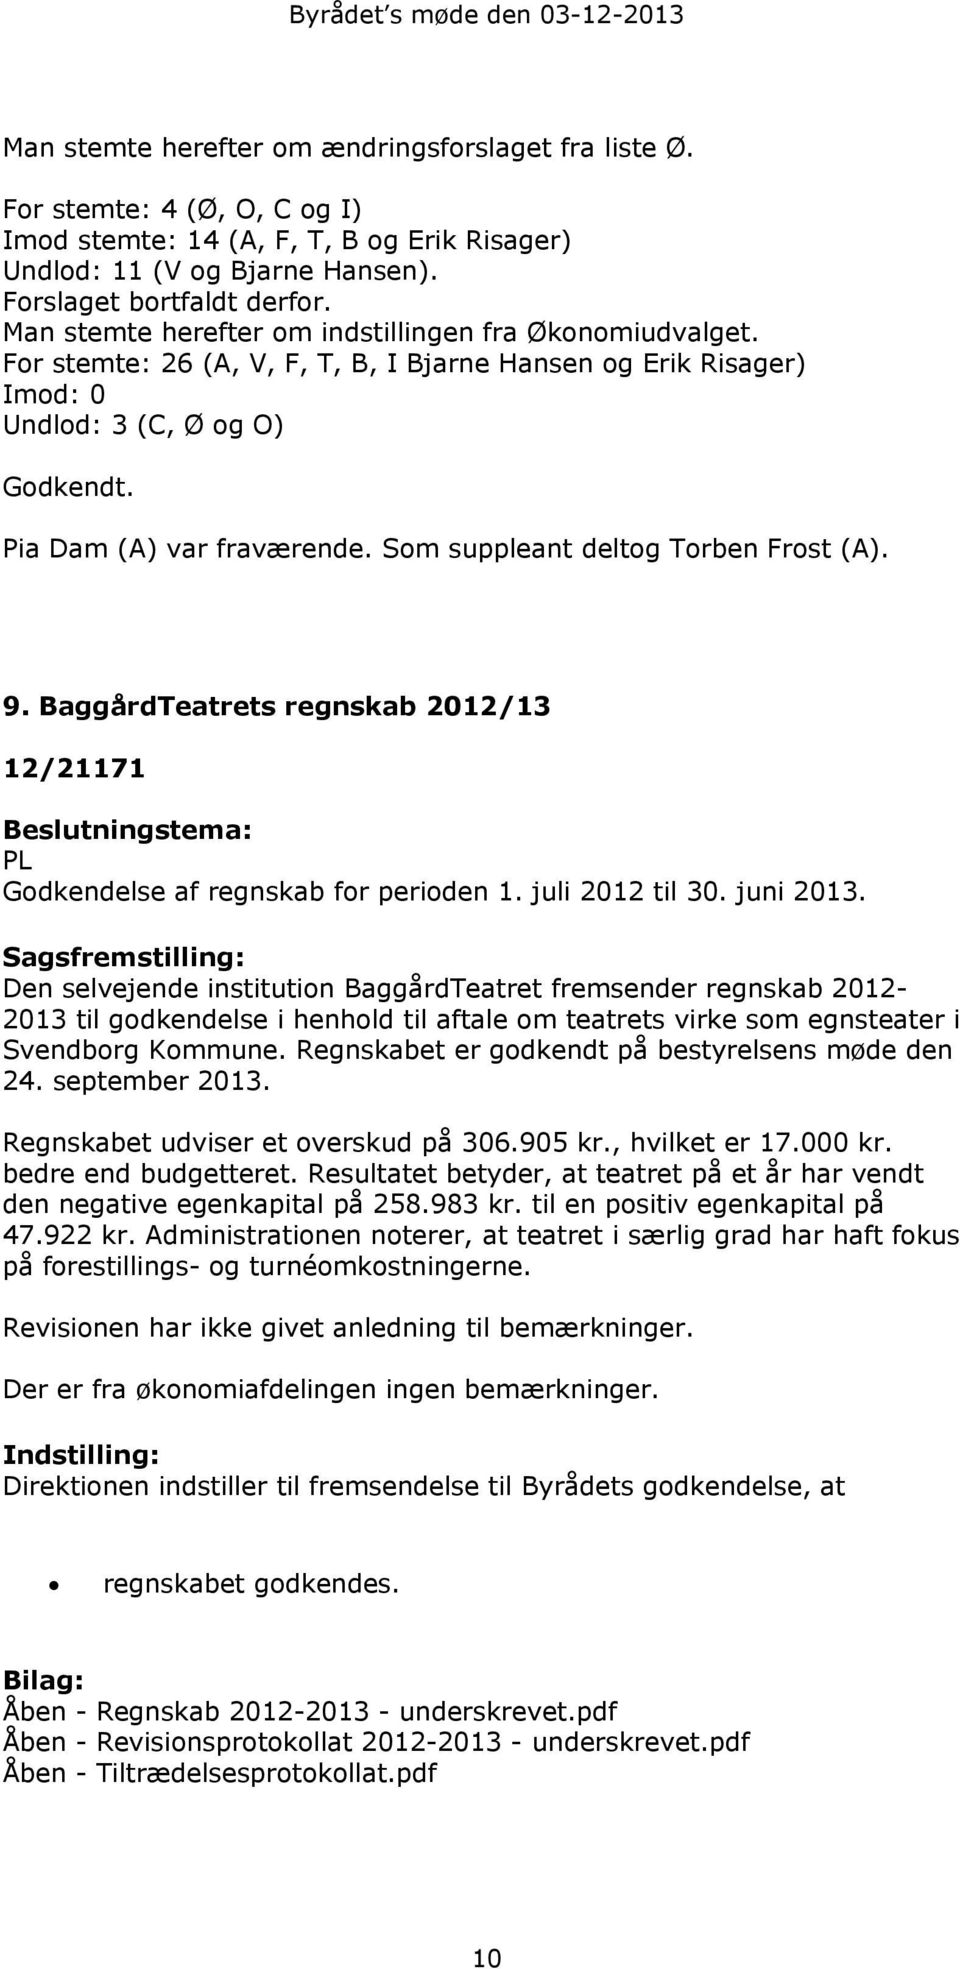 Pia Dam (A) var fraværende. Som suppleant deltog Torben Frost (A). 9. BaggårdTeatrets regnskab 2012/13 12/21171 Beslutningstema: PL Godkendelse af regnskab for perioden 1. juli 2012 til 30. juni 2013.